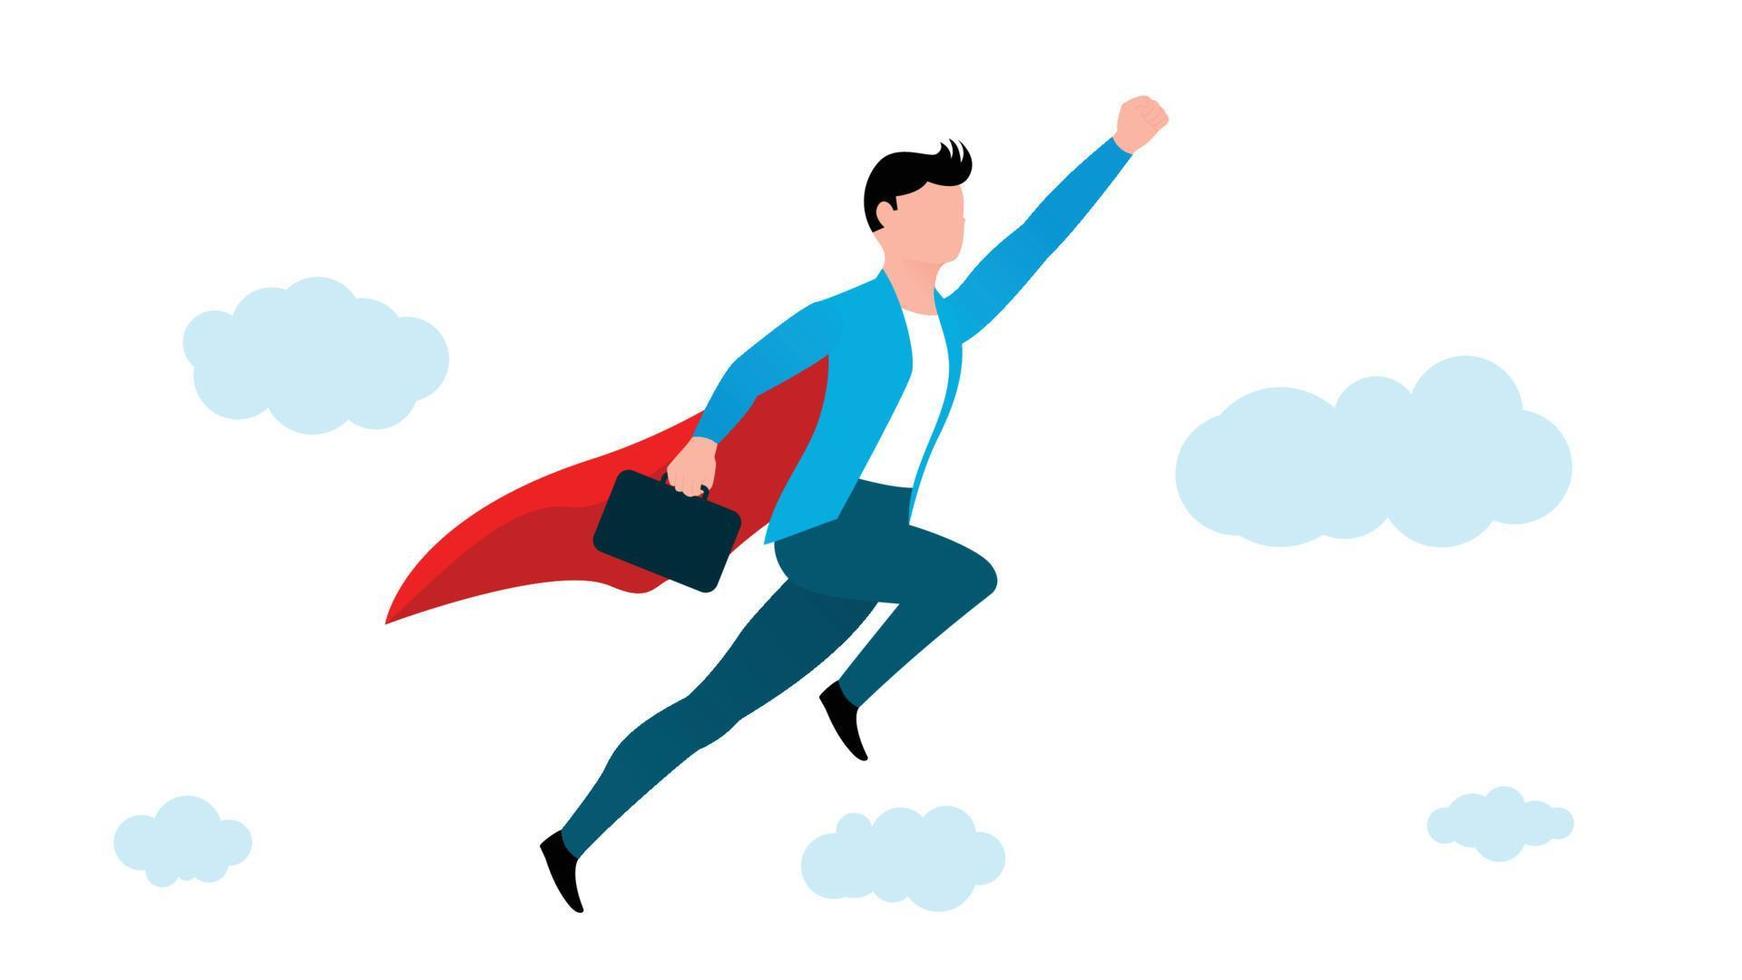 hombre volando en pose de superhéroe con maletín, ilustración de vector de carácter empresarial sobre fondo blanco.